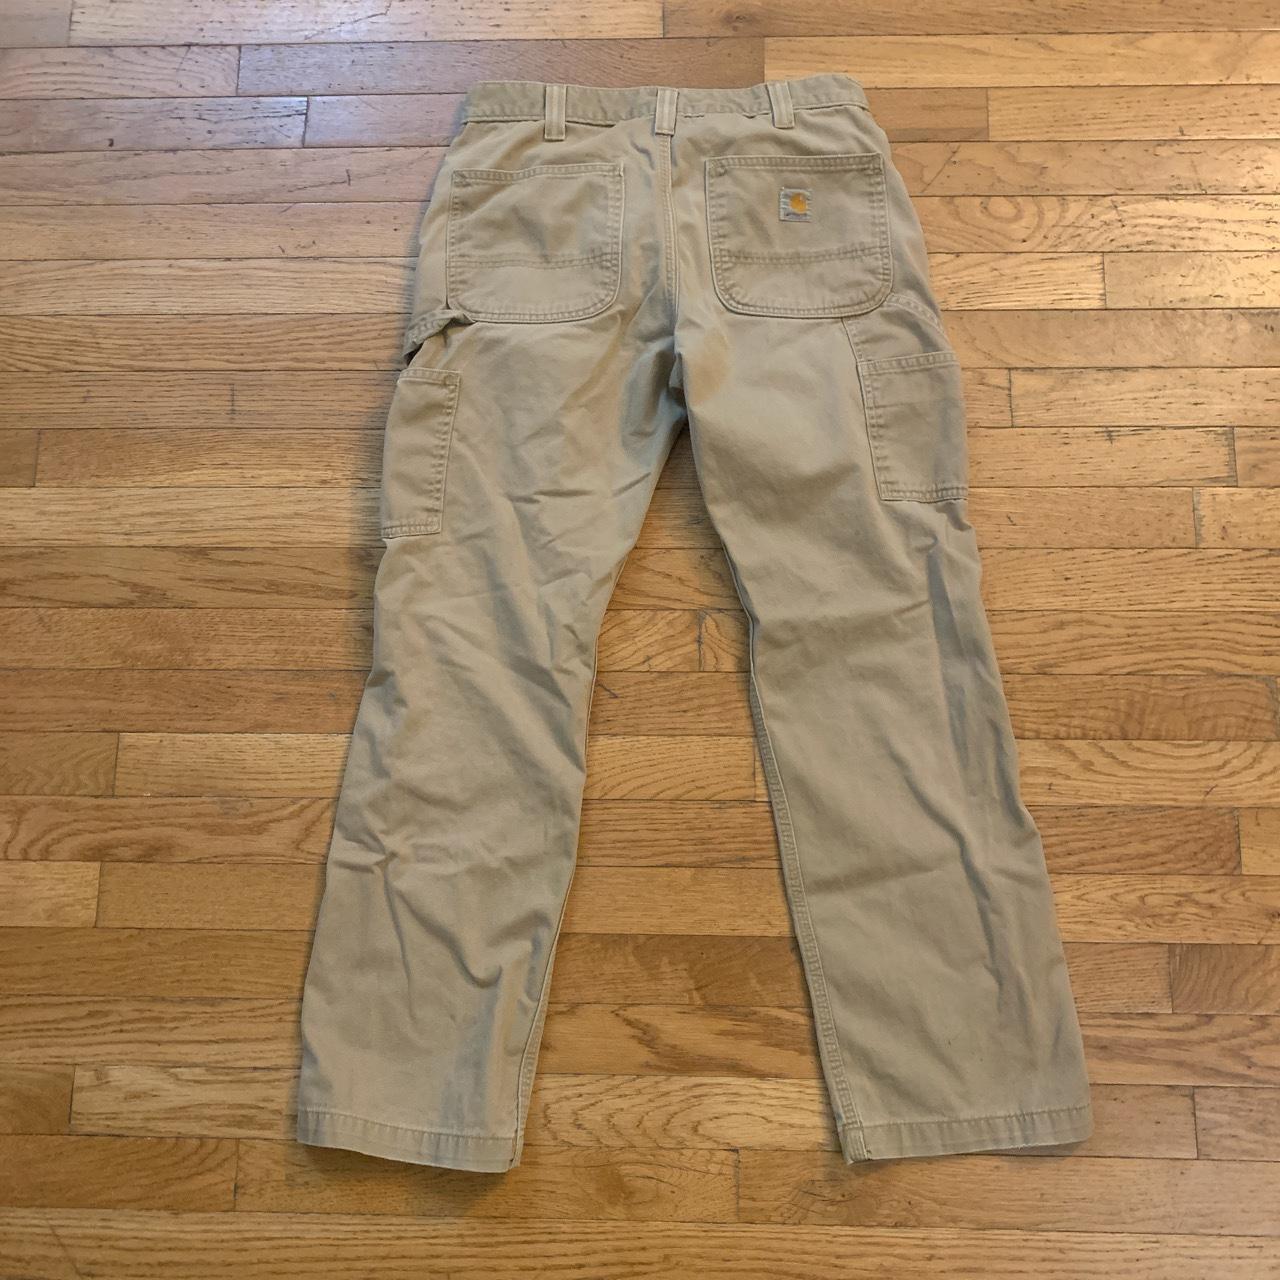 Vintage carhartt carpenter pants khaki colored size... - Depop